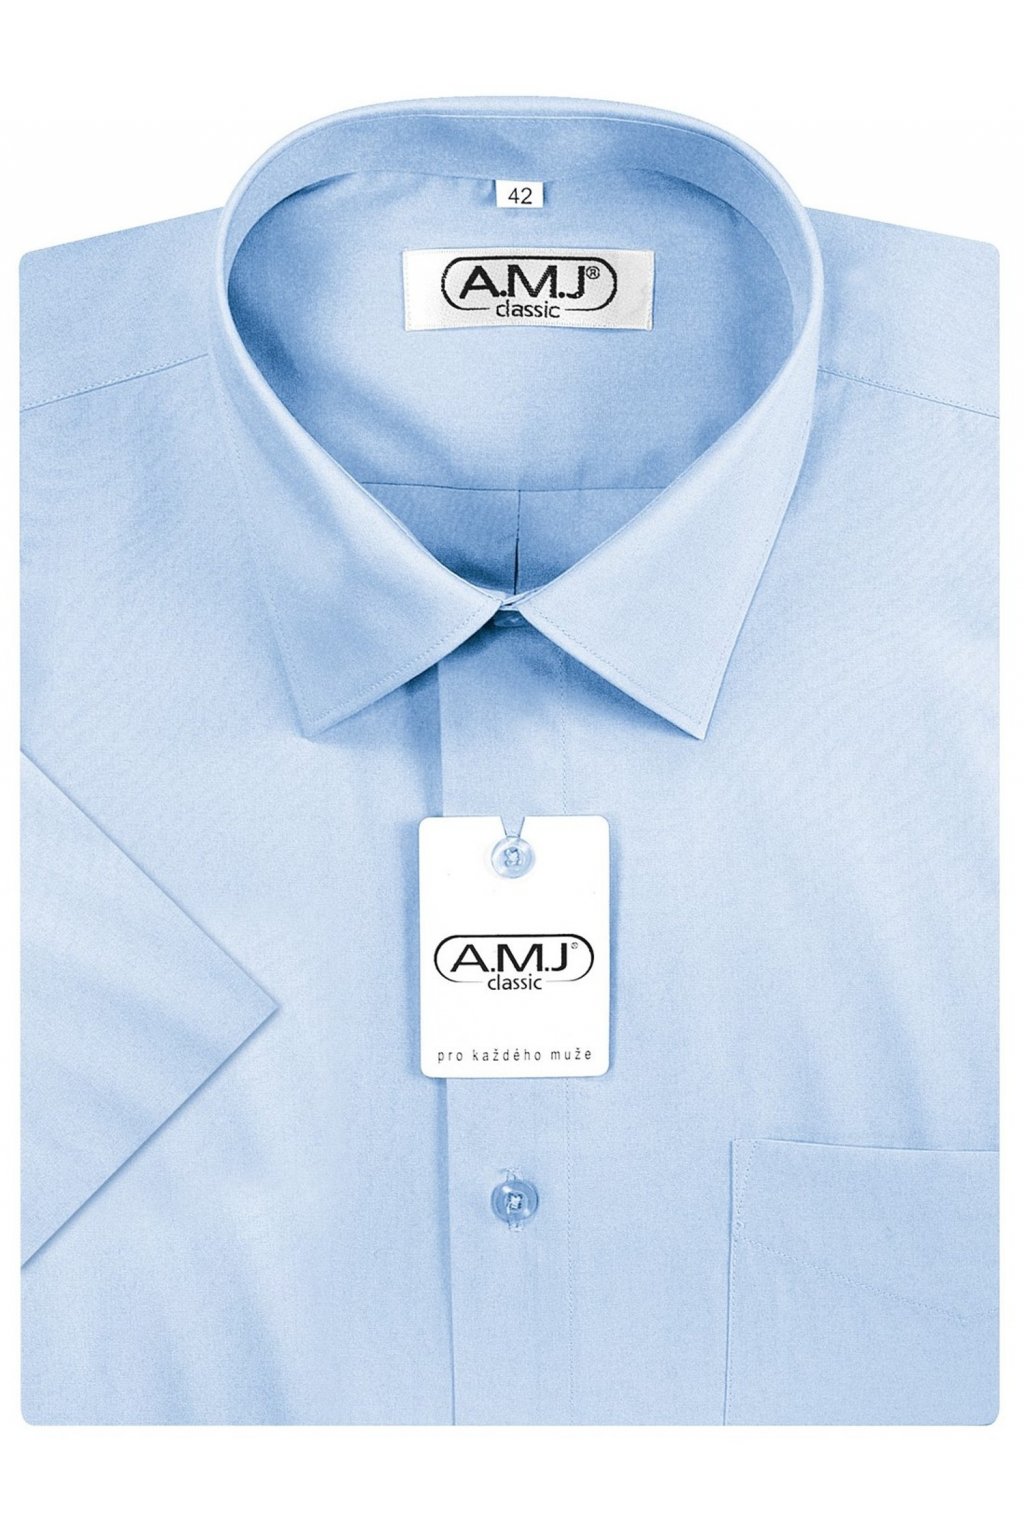 Pánská košile AMJ Comfort fit s krátkým rukávem - modrá/azurová